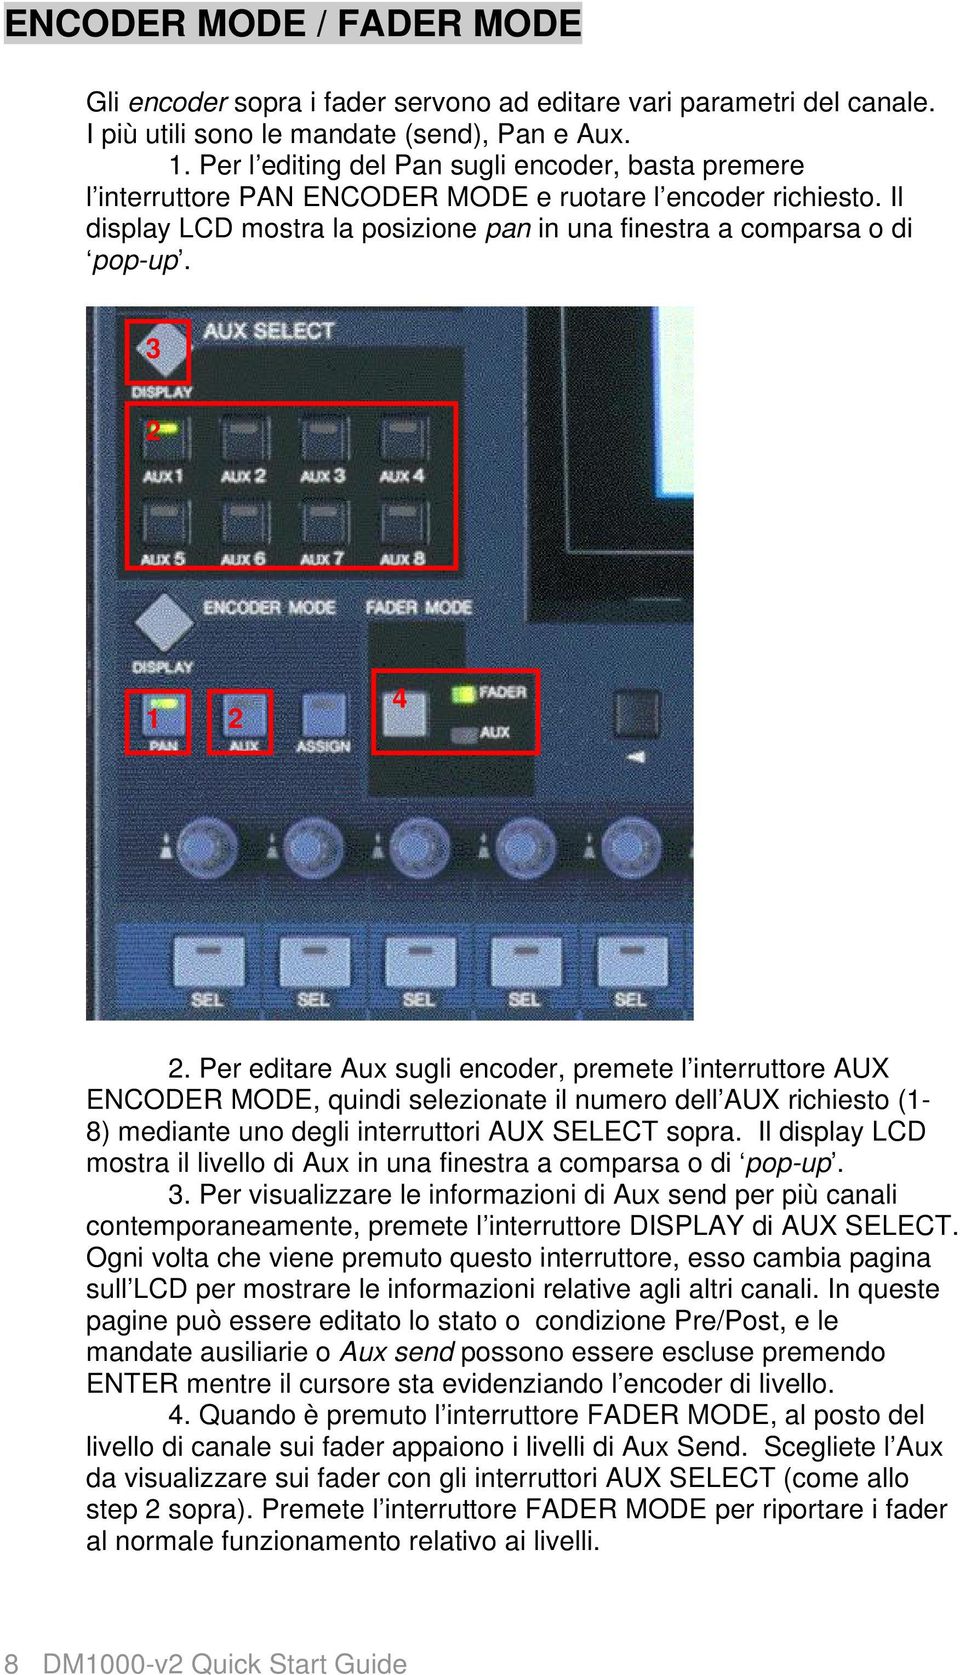 3 2 1 2 4 2. Per editare Aux sugli encoder, premete l interruttore AUX ENCODER MODE, quindi selezionate il numero dell AUX richiesto (1-8) mediante uno degli interruttori AUX SELECT sopra.